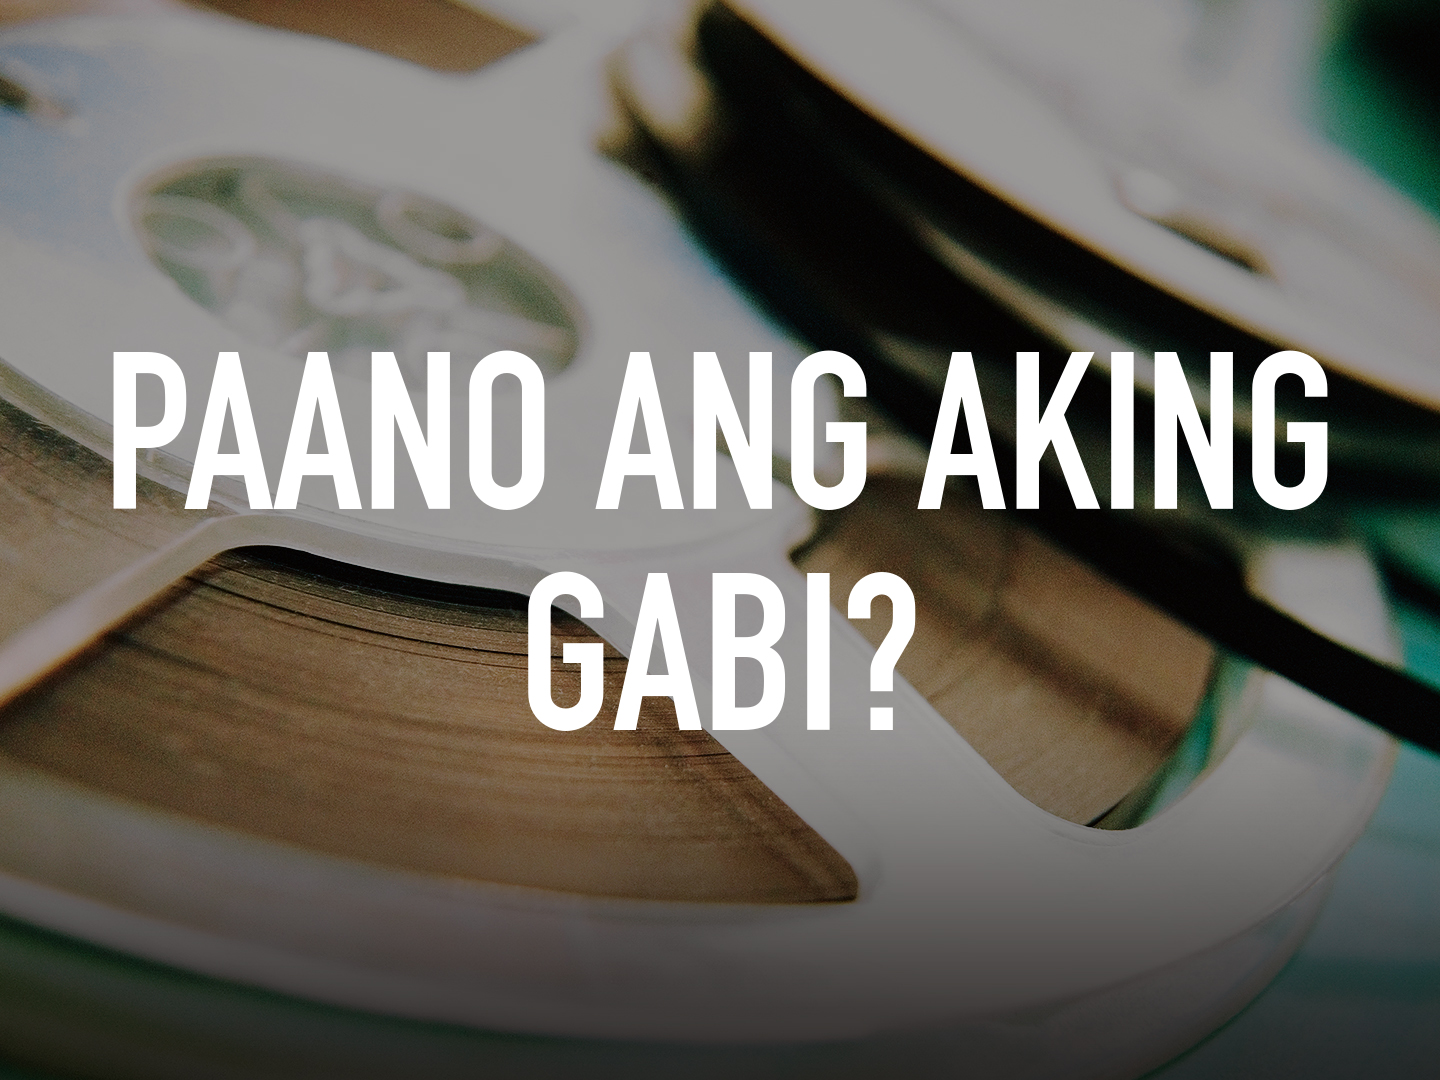 Paano ang Aking Gabi? pic